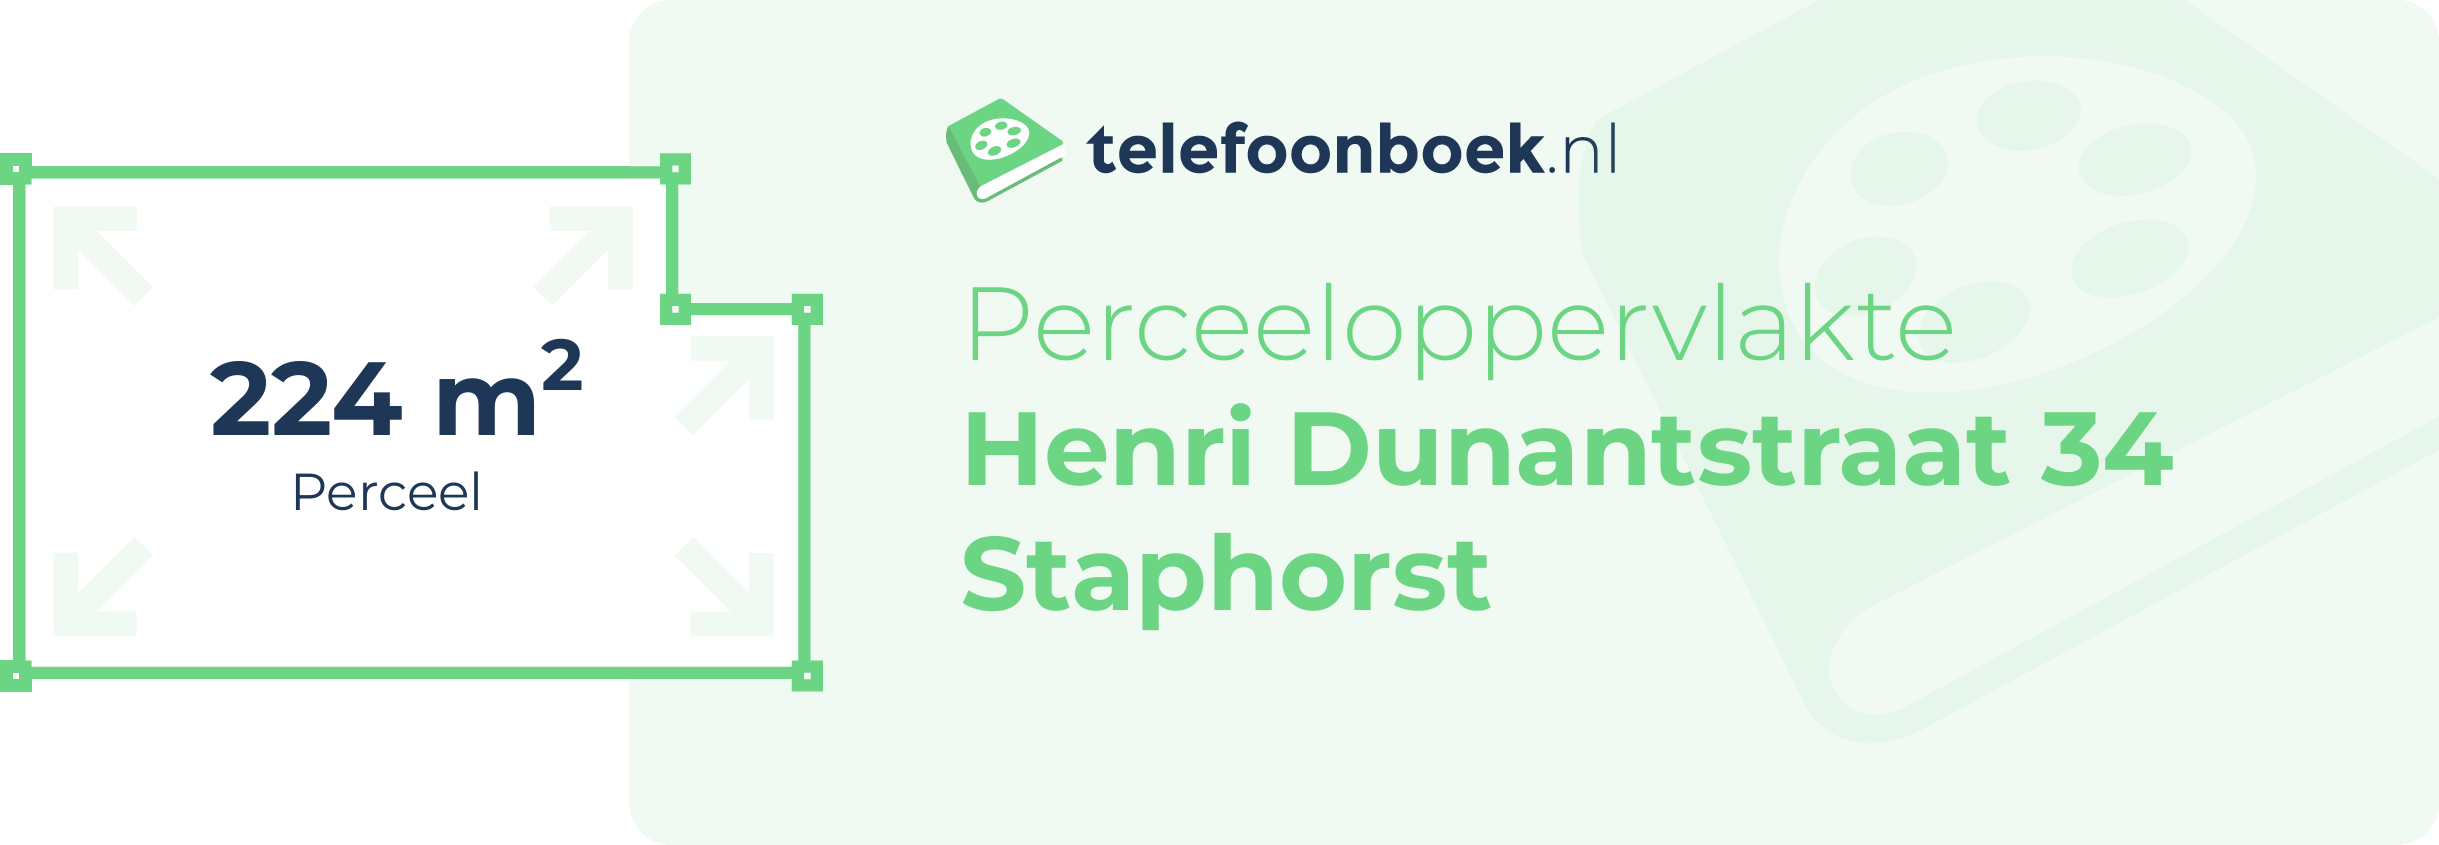 Perceeloppervlakte Henri Dunantstraat 34 Staphorst